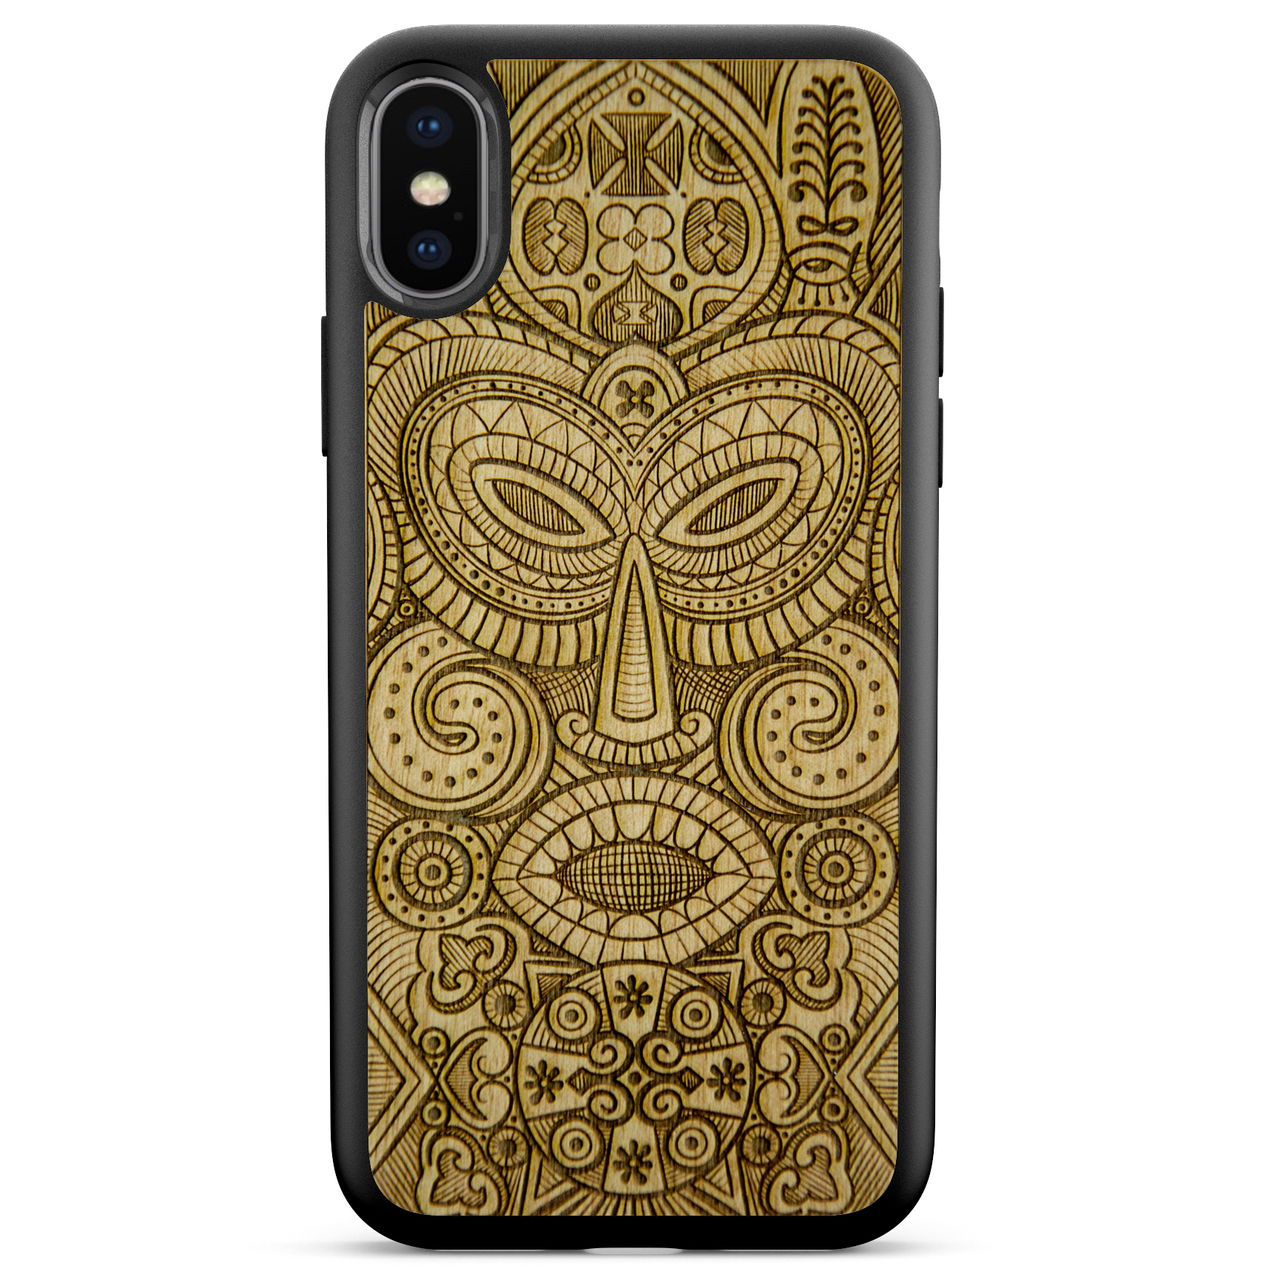 Custodia per telefono in legno con maschera tribale per iPhone X XS